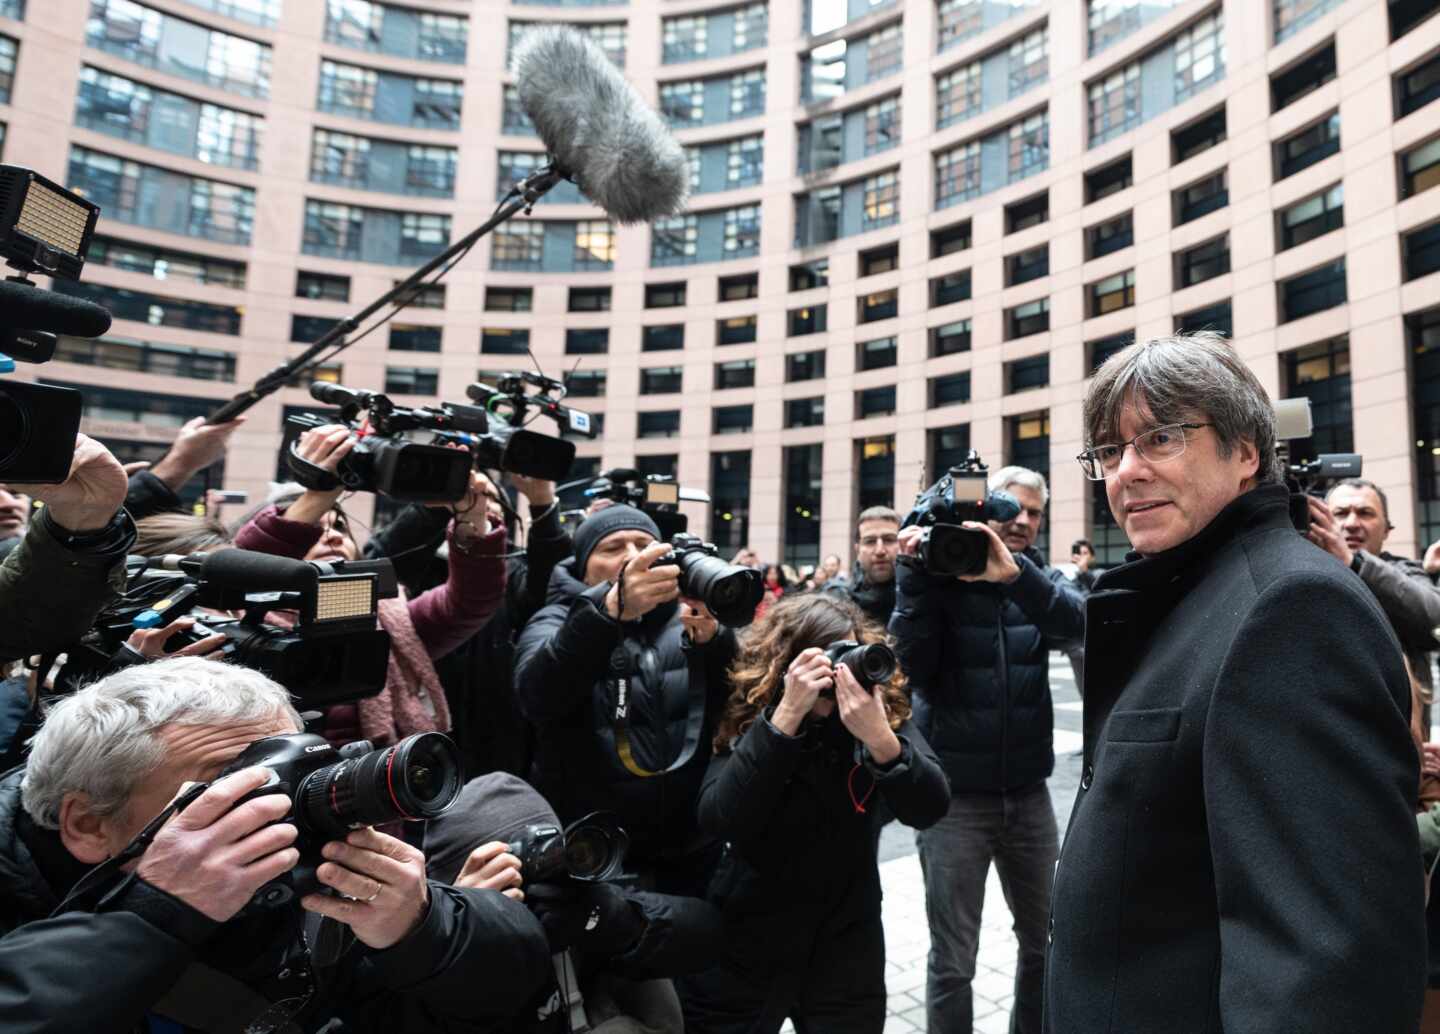 El juez propone juzgar a los mossos que acompañaron a Puigdemont en su huida por encubrimiento